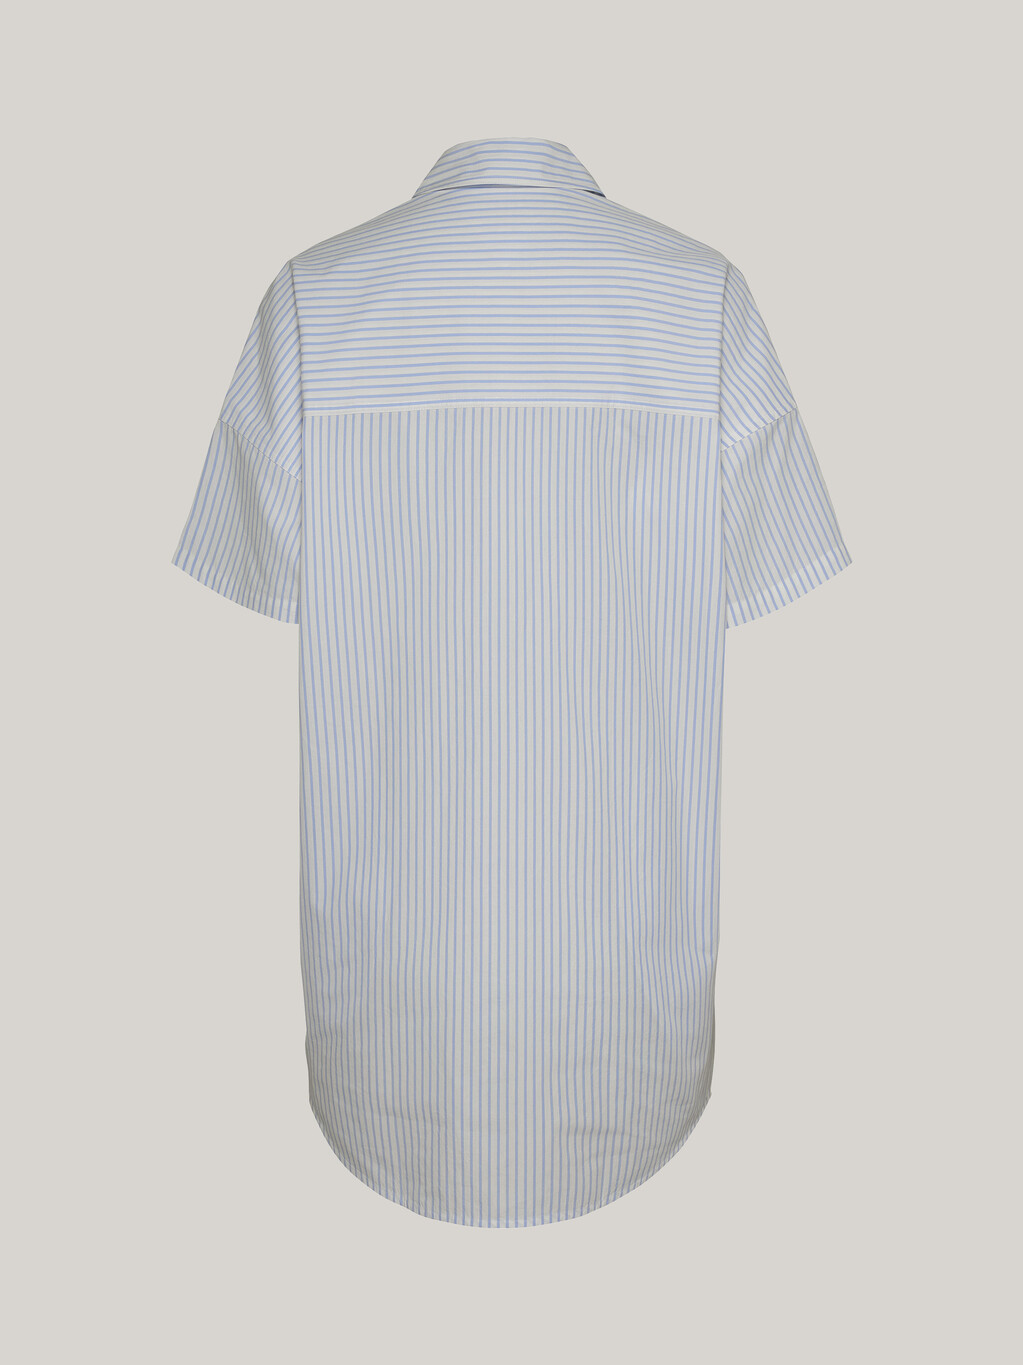 超寬鬆條紋恤衫連身裙, Moderate Blue / Stripe, hi-res